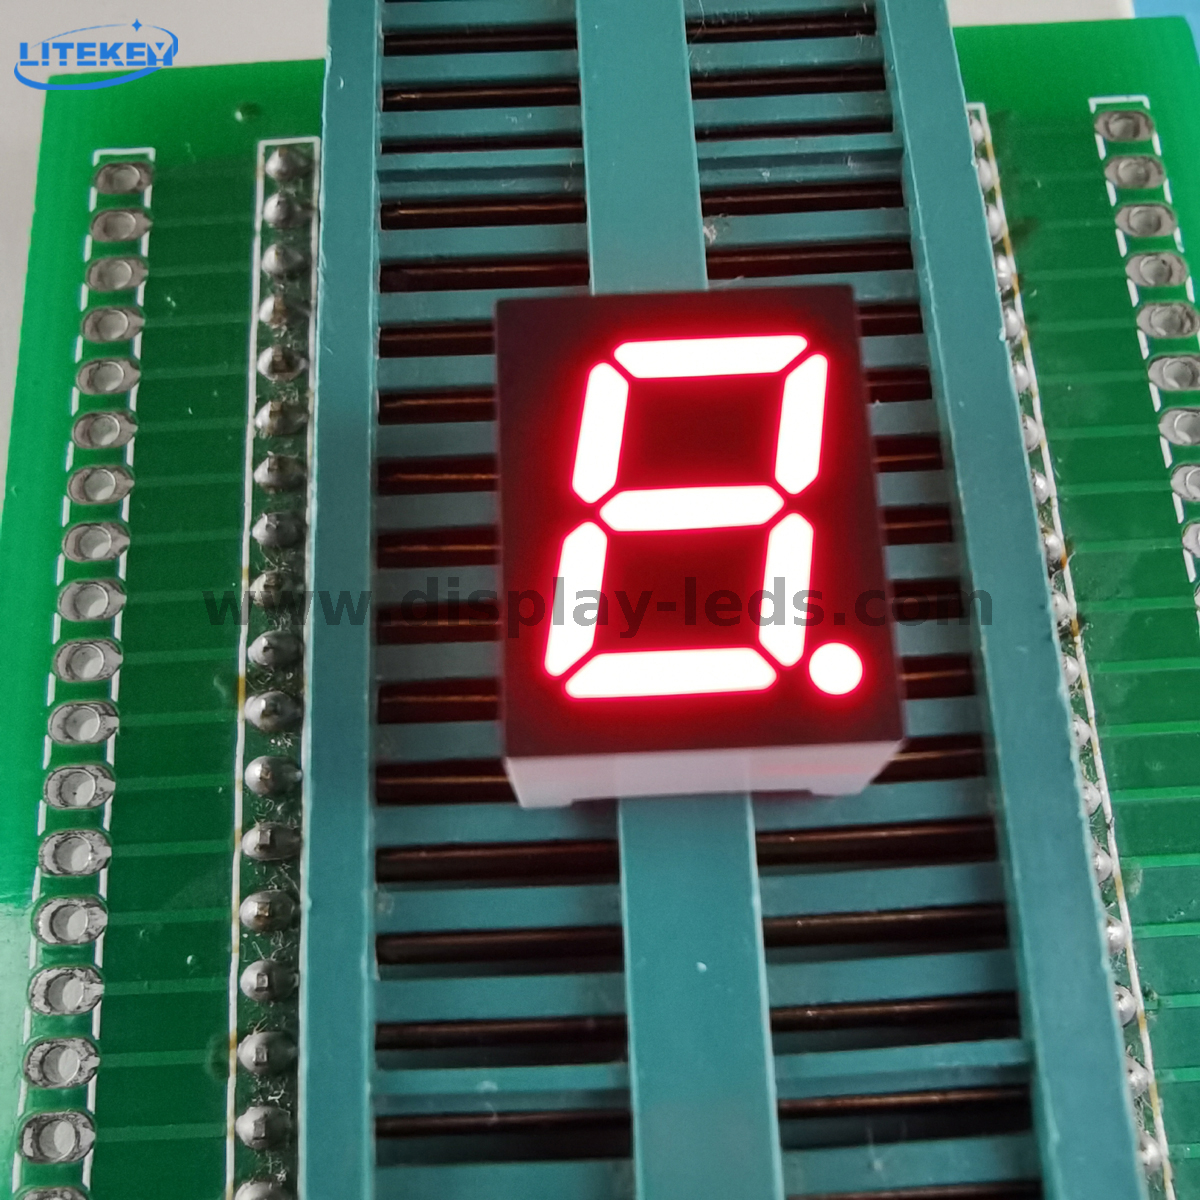 Serie LD3911A / B: pantalla de 7 segmentos de 1 dígito y 0,39 pulgadas